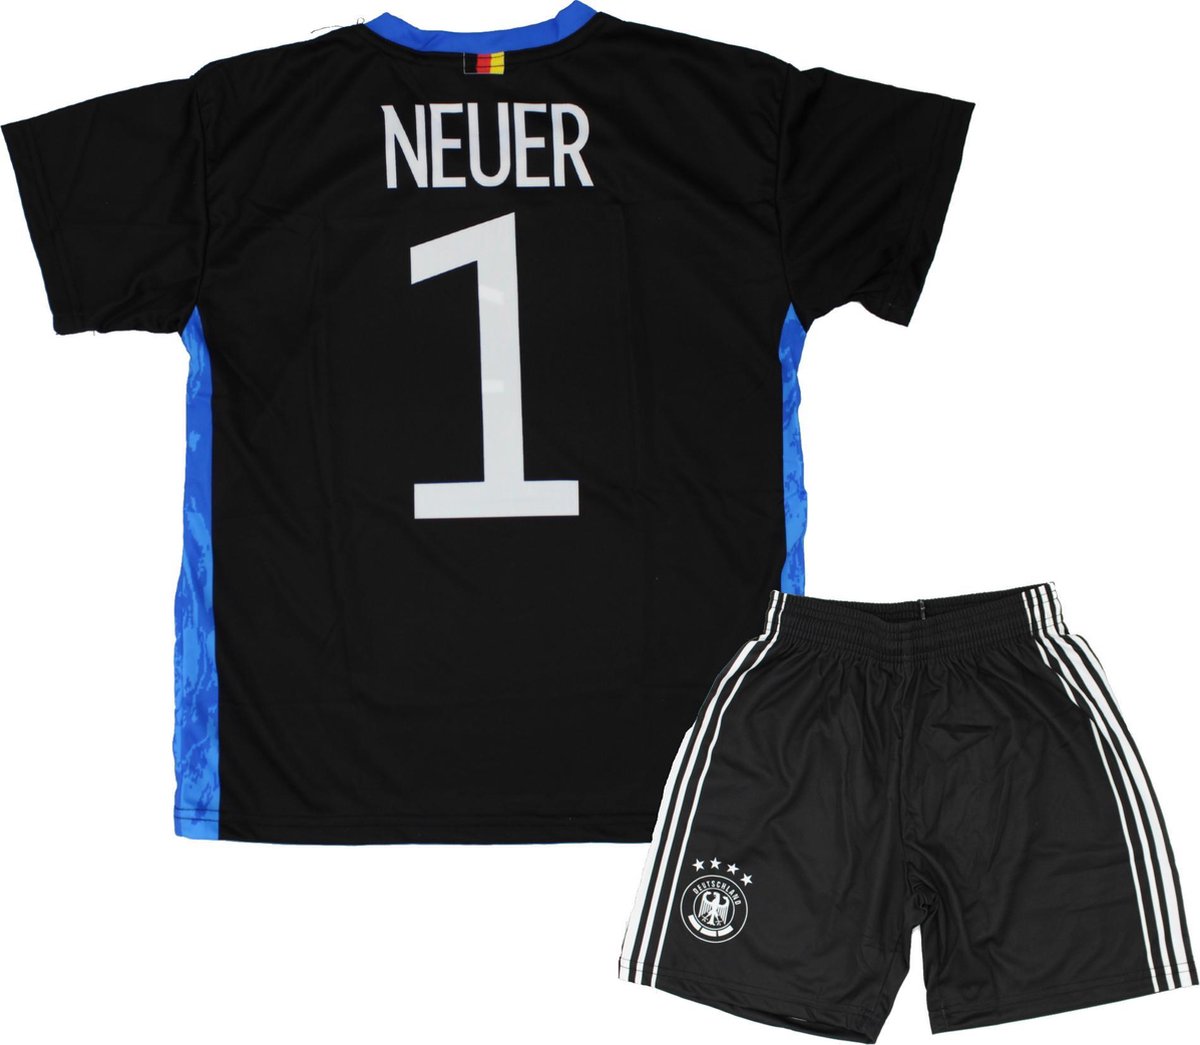 Neuer| Keepers Tenue 2021-2022 | Replica Voetbal Shirt + broekje set - Duitsland EK/WK voetbaltenue - Maat 140